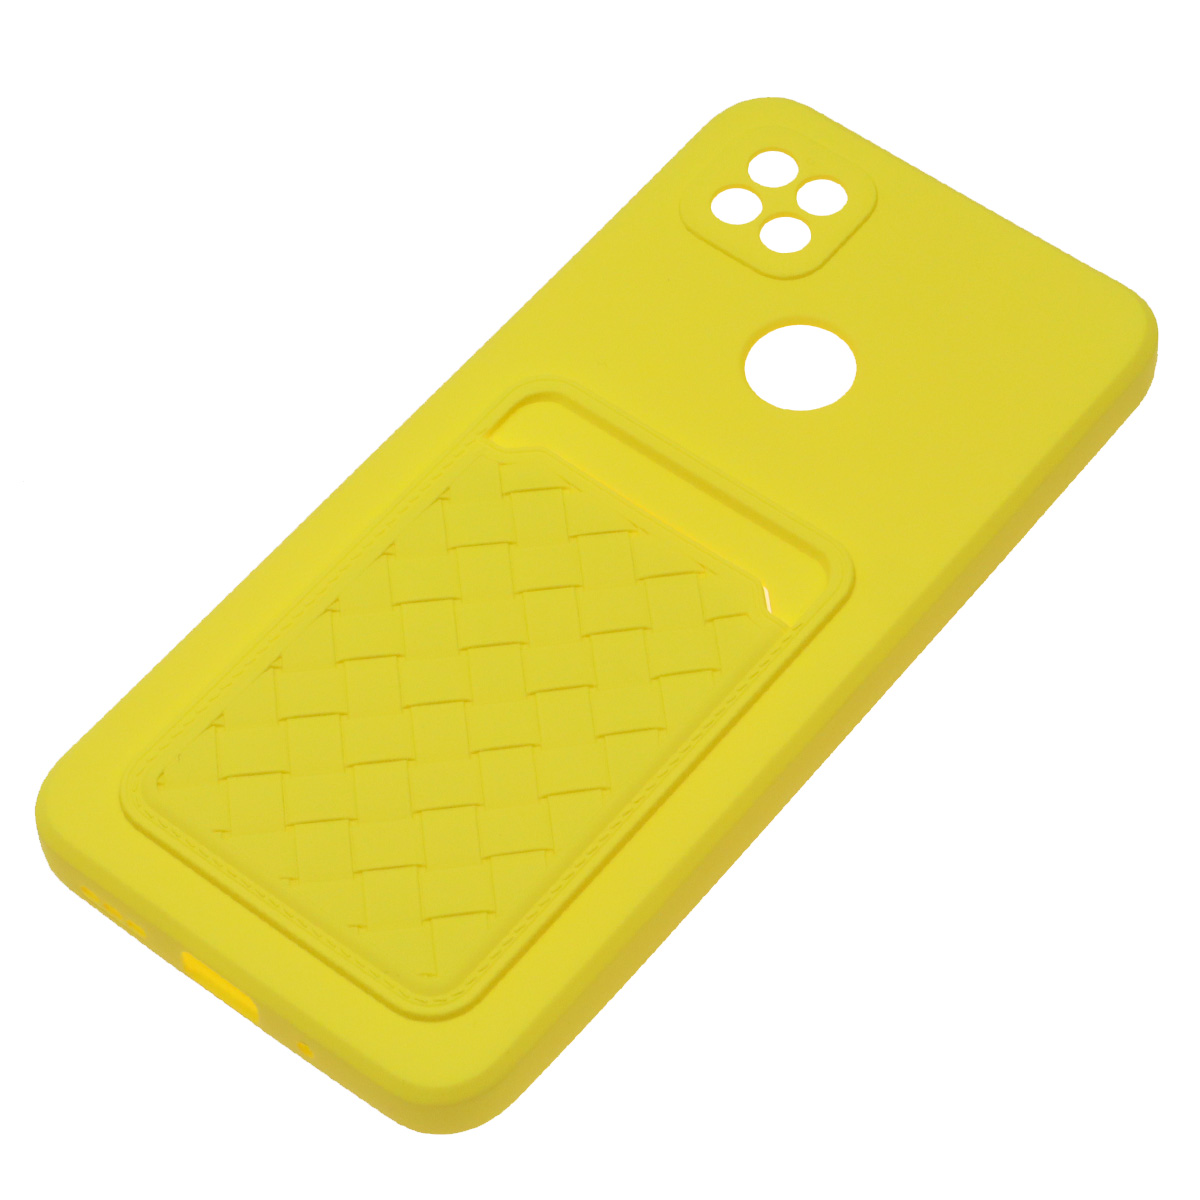 Чехол накладка CARD CASE для XIAOMI Redmi 9C, Redmi 10A, силикон, отдел для карт, цвет желтый